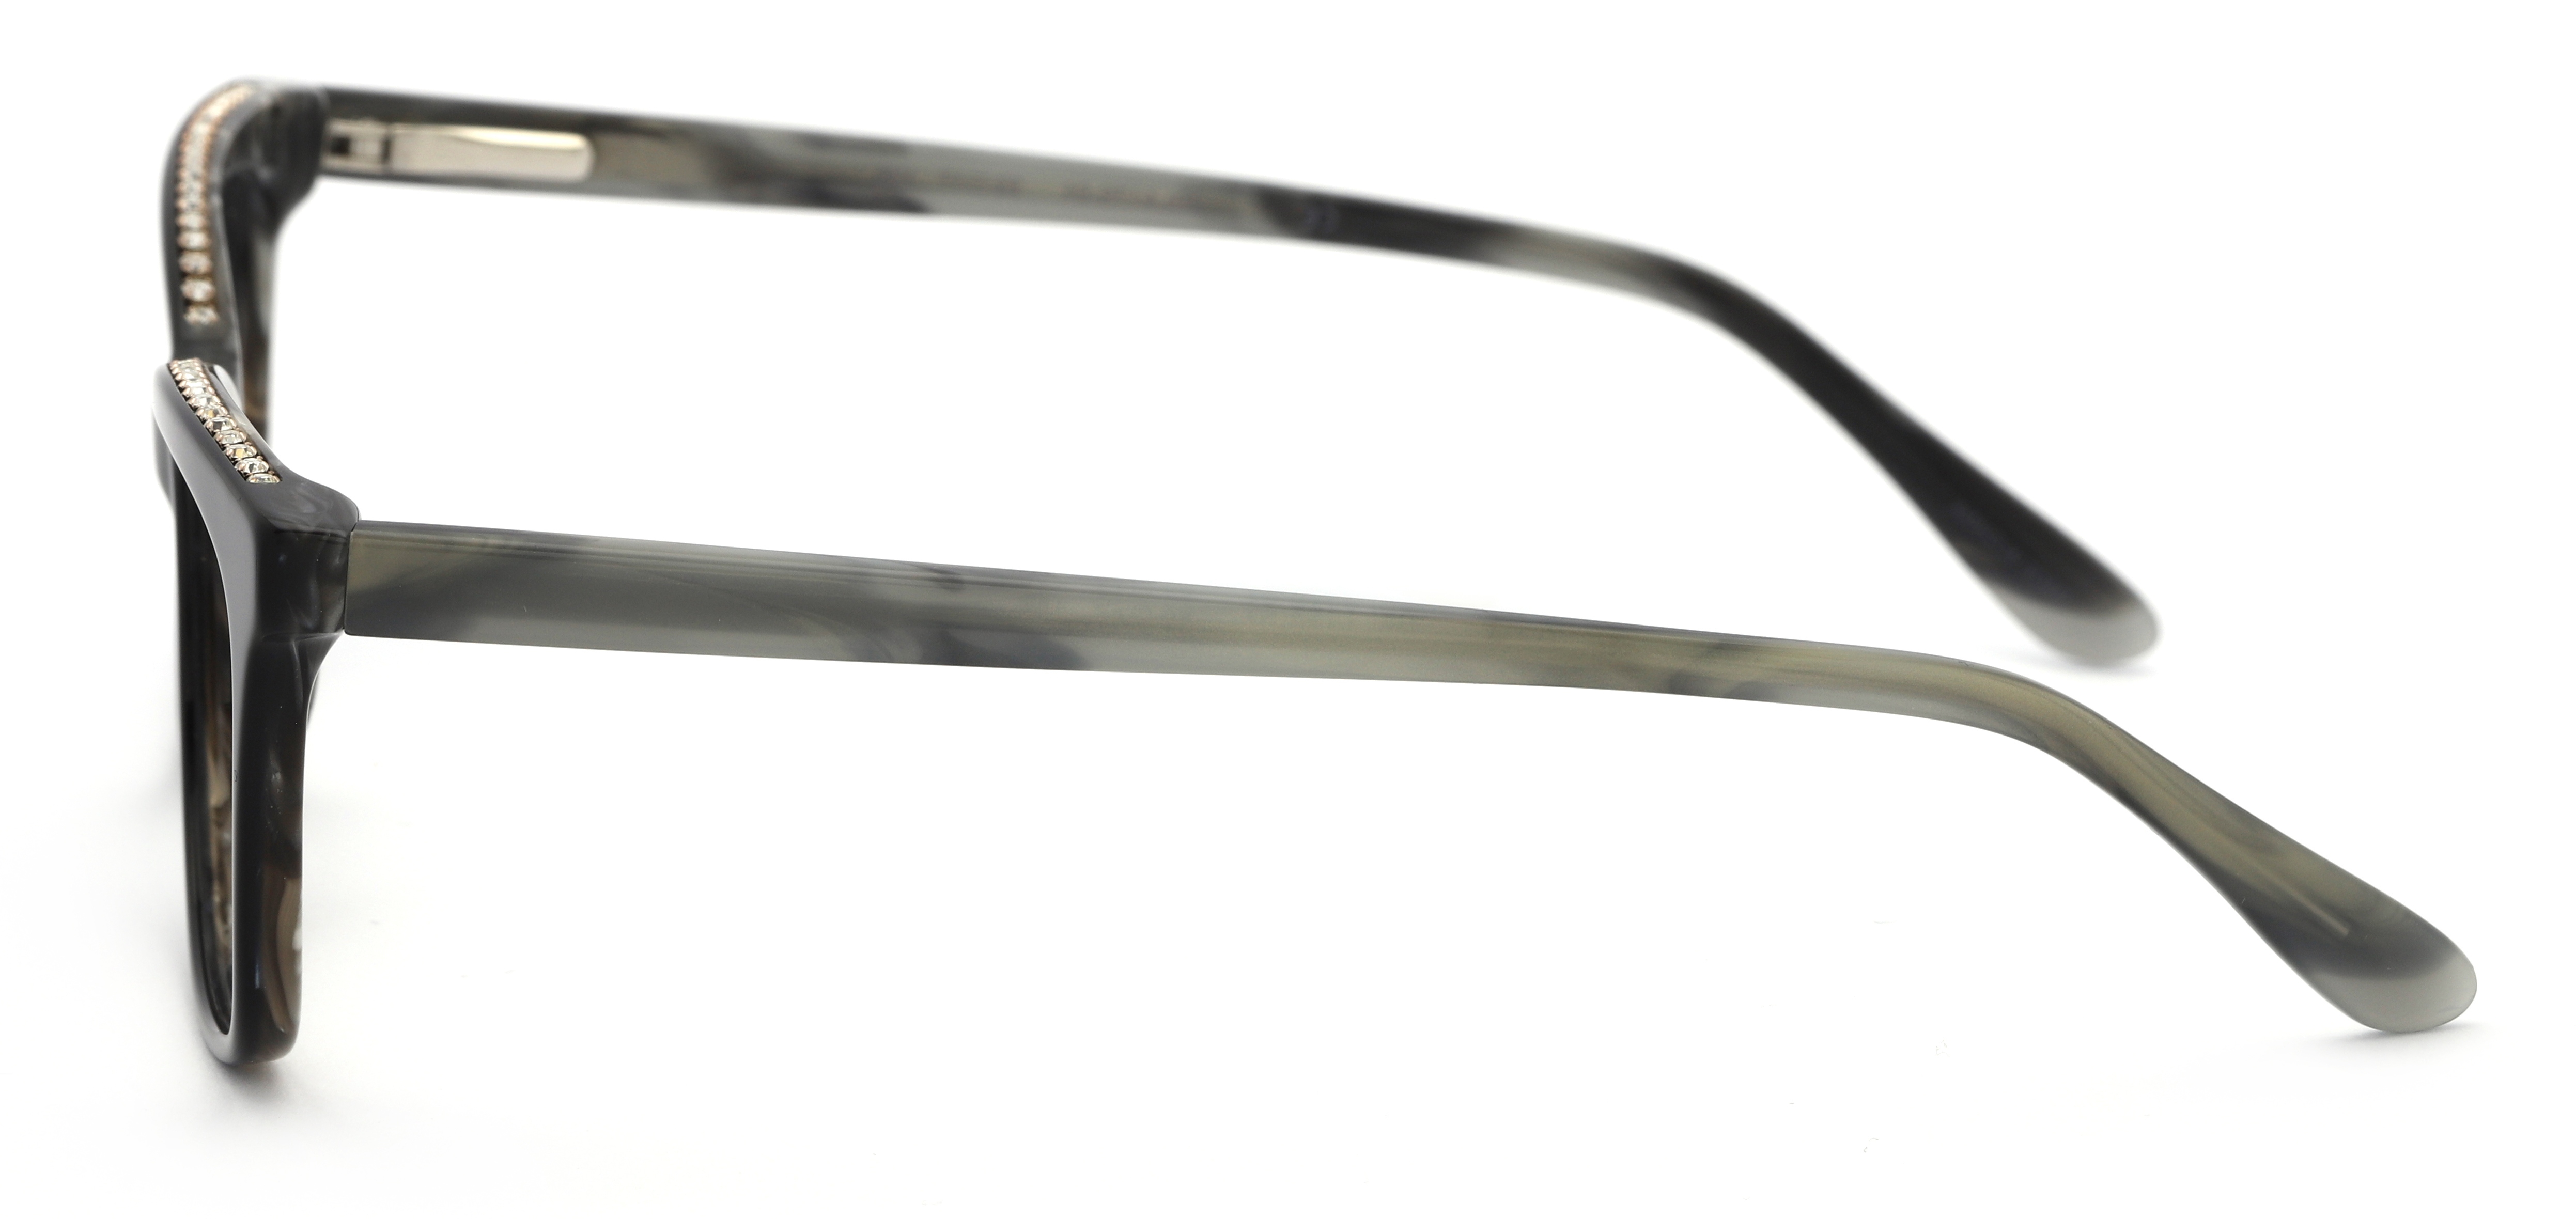 Designer Frames for Less Women's Rx'able Eyeglasses, Black - image 3 of 13